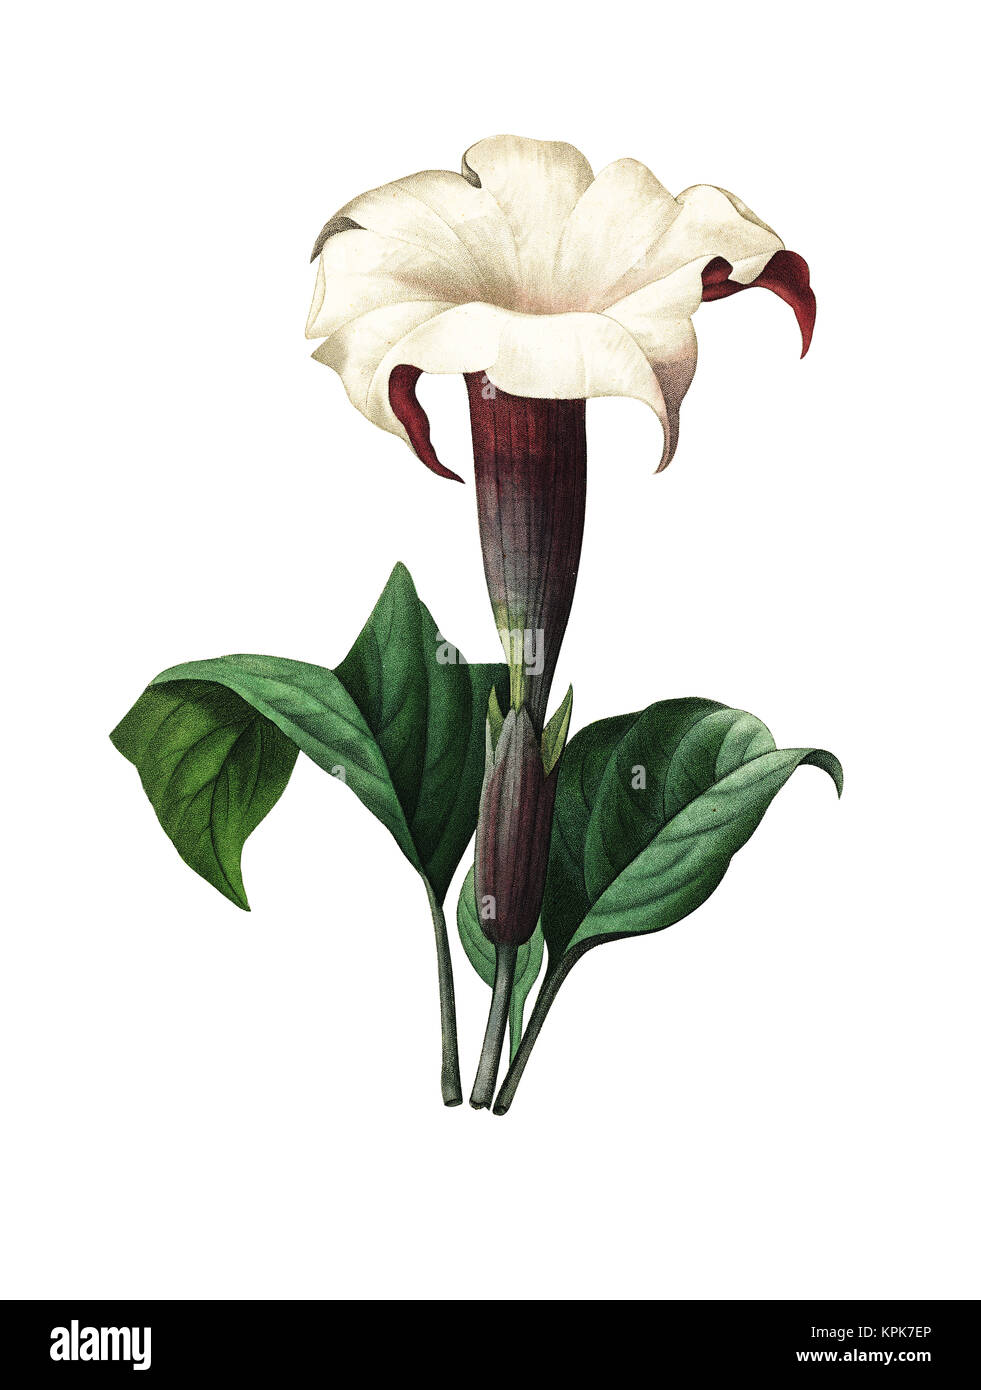 Illustration d'une fleur de Datura datant de 19th ans. Gravure de Pierre-Joseph Redoute. Publié dans choix des plus belles fleurs, Paris (1827). Banque D'Images